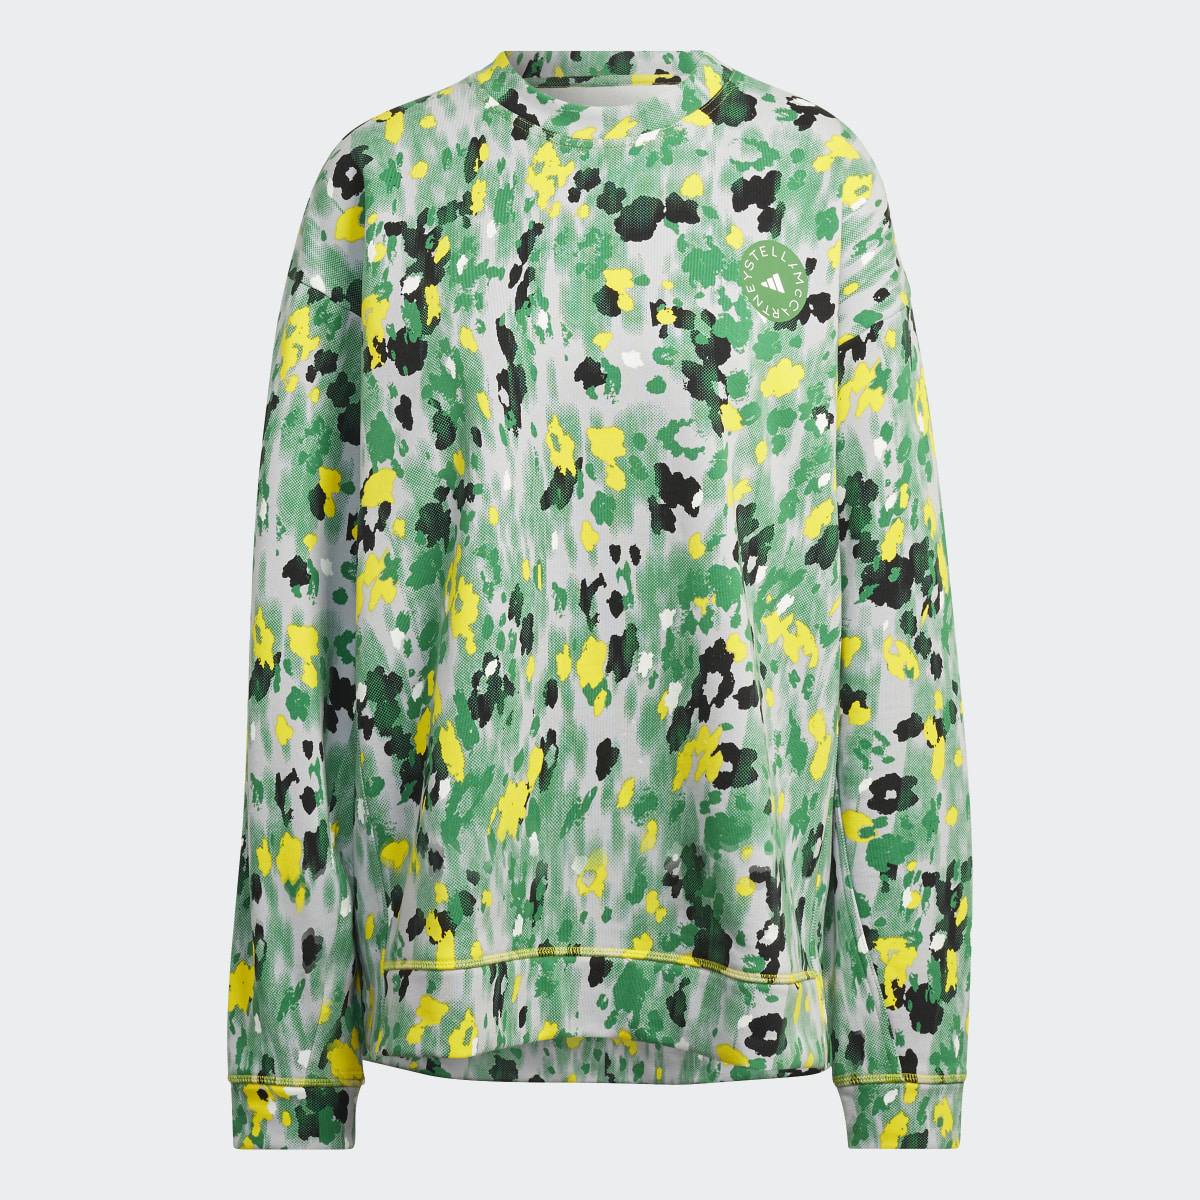 Adidas by Stella McCartney Floral Print Sweatshirt. 7